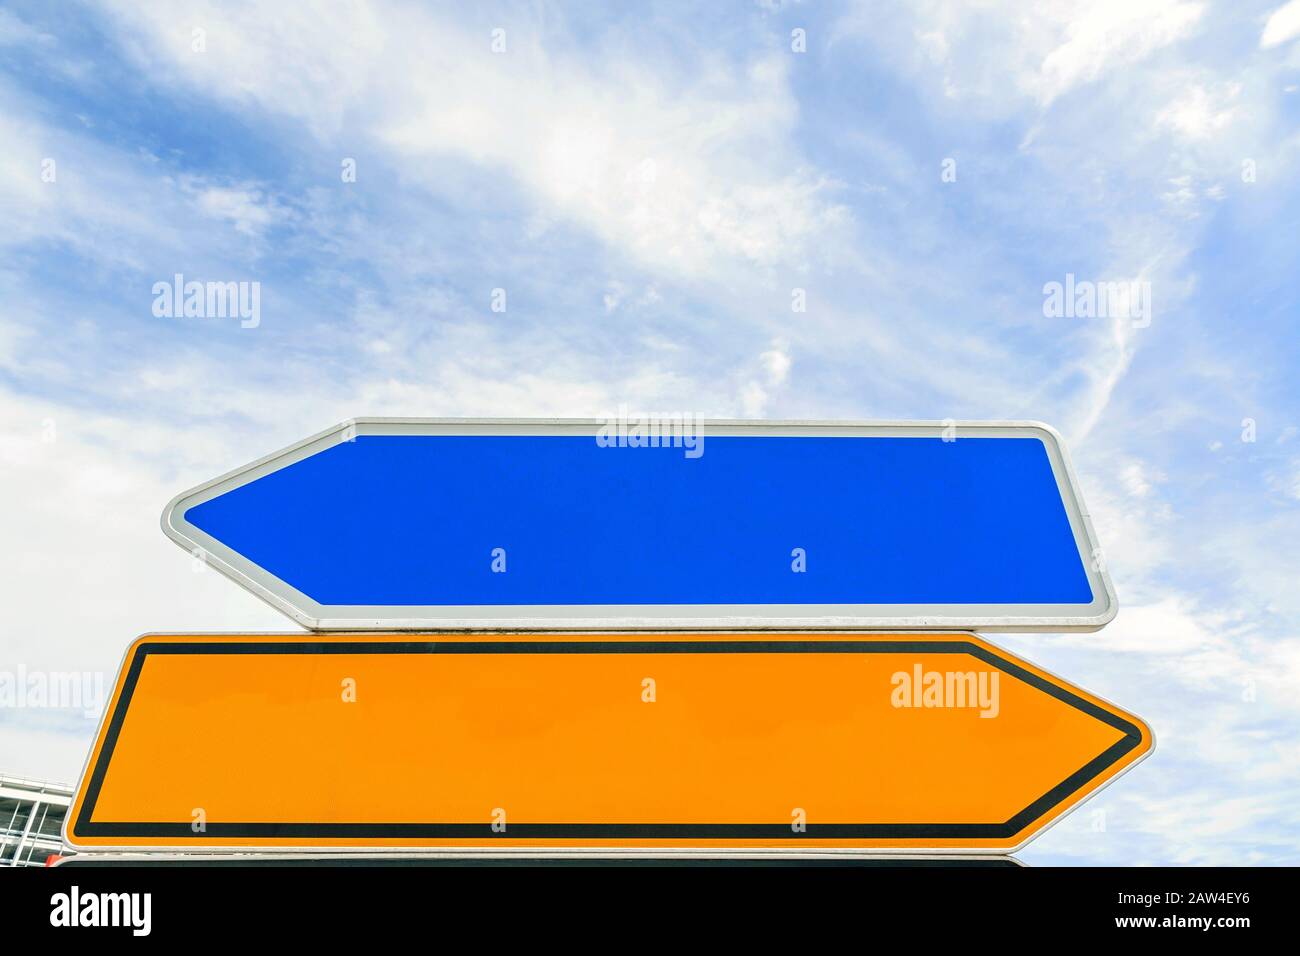 segnale di traffico con freccia vuota (bidirezionale) rivolto verso lati diversi (sinistra/destra) - cielo blu Foto Stock